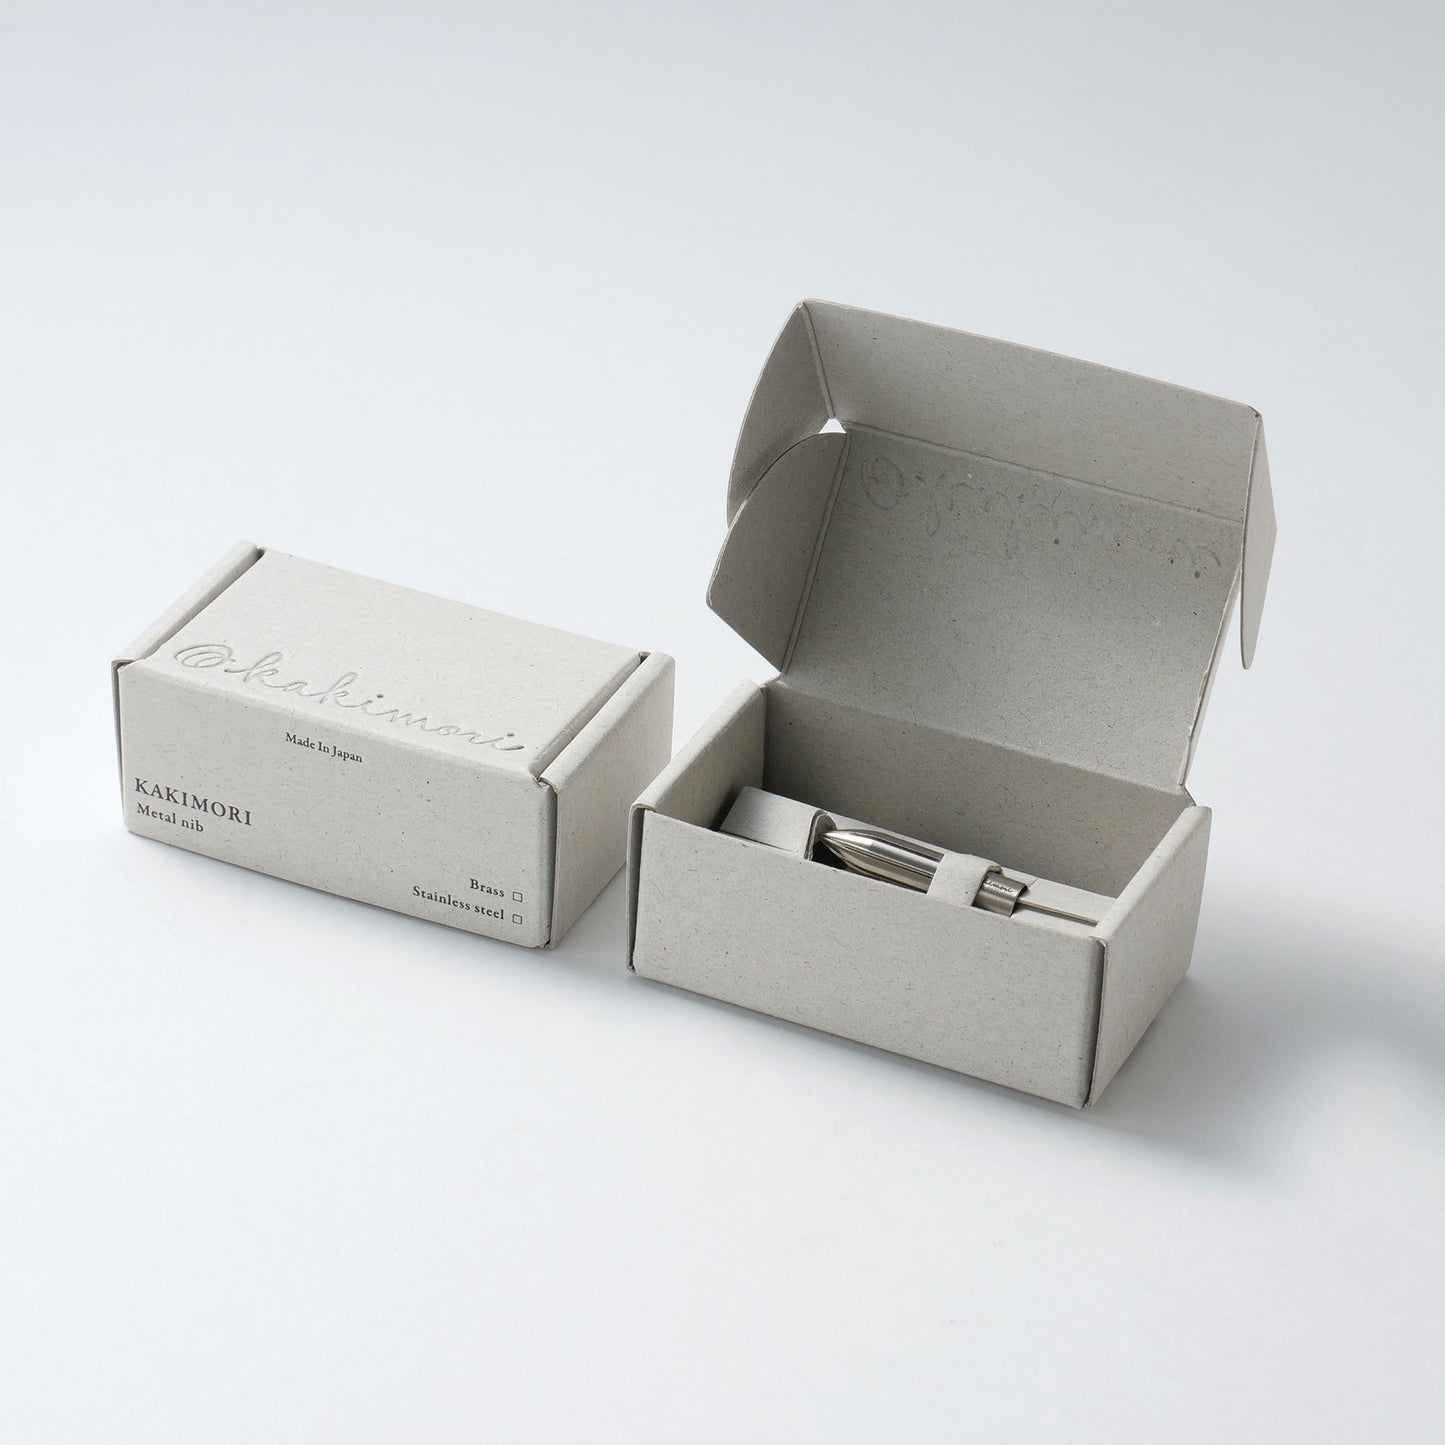 Kakimori Metal Nib - Steel - Dip Pen Nib - Made in Japan In Box